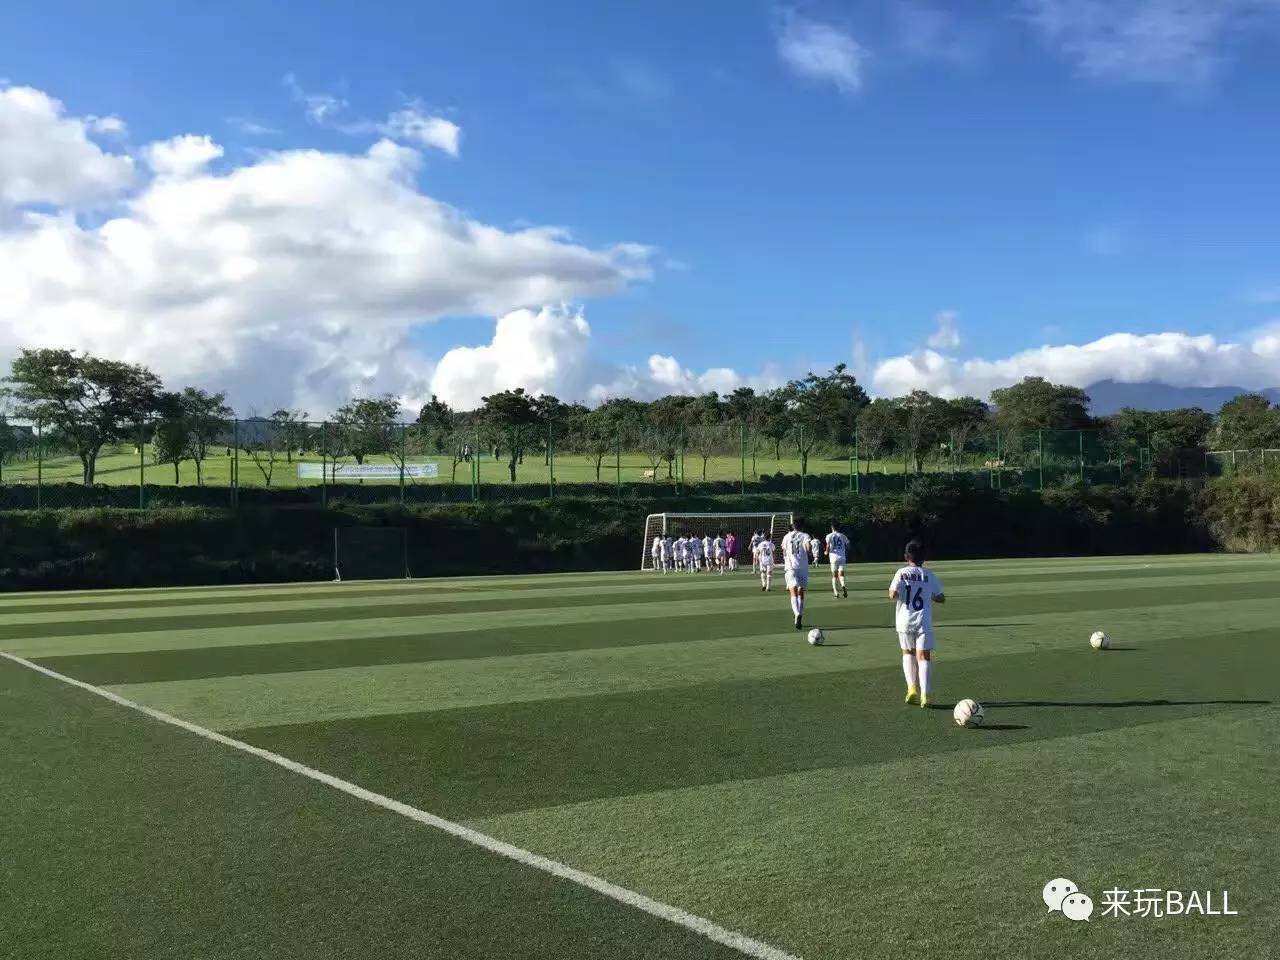 成基金公益冬令营参赛队伍巡礼:广州富力足球